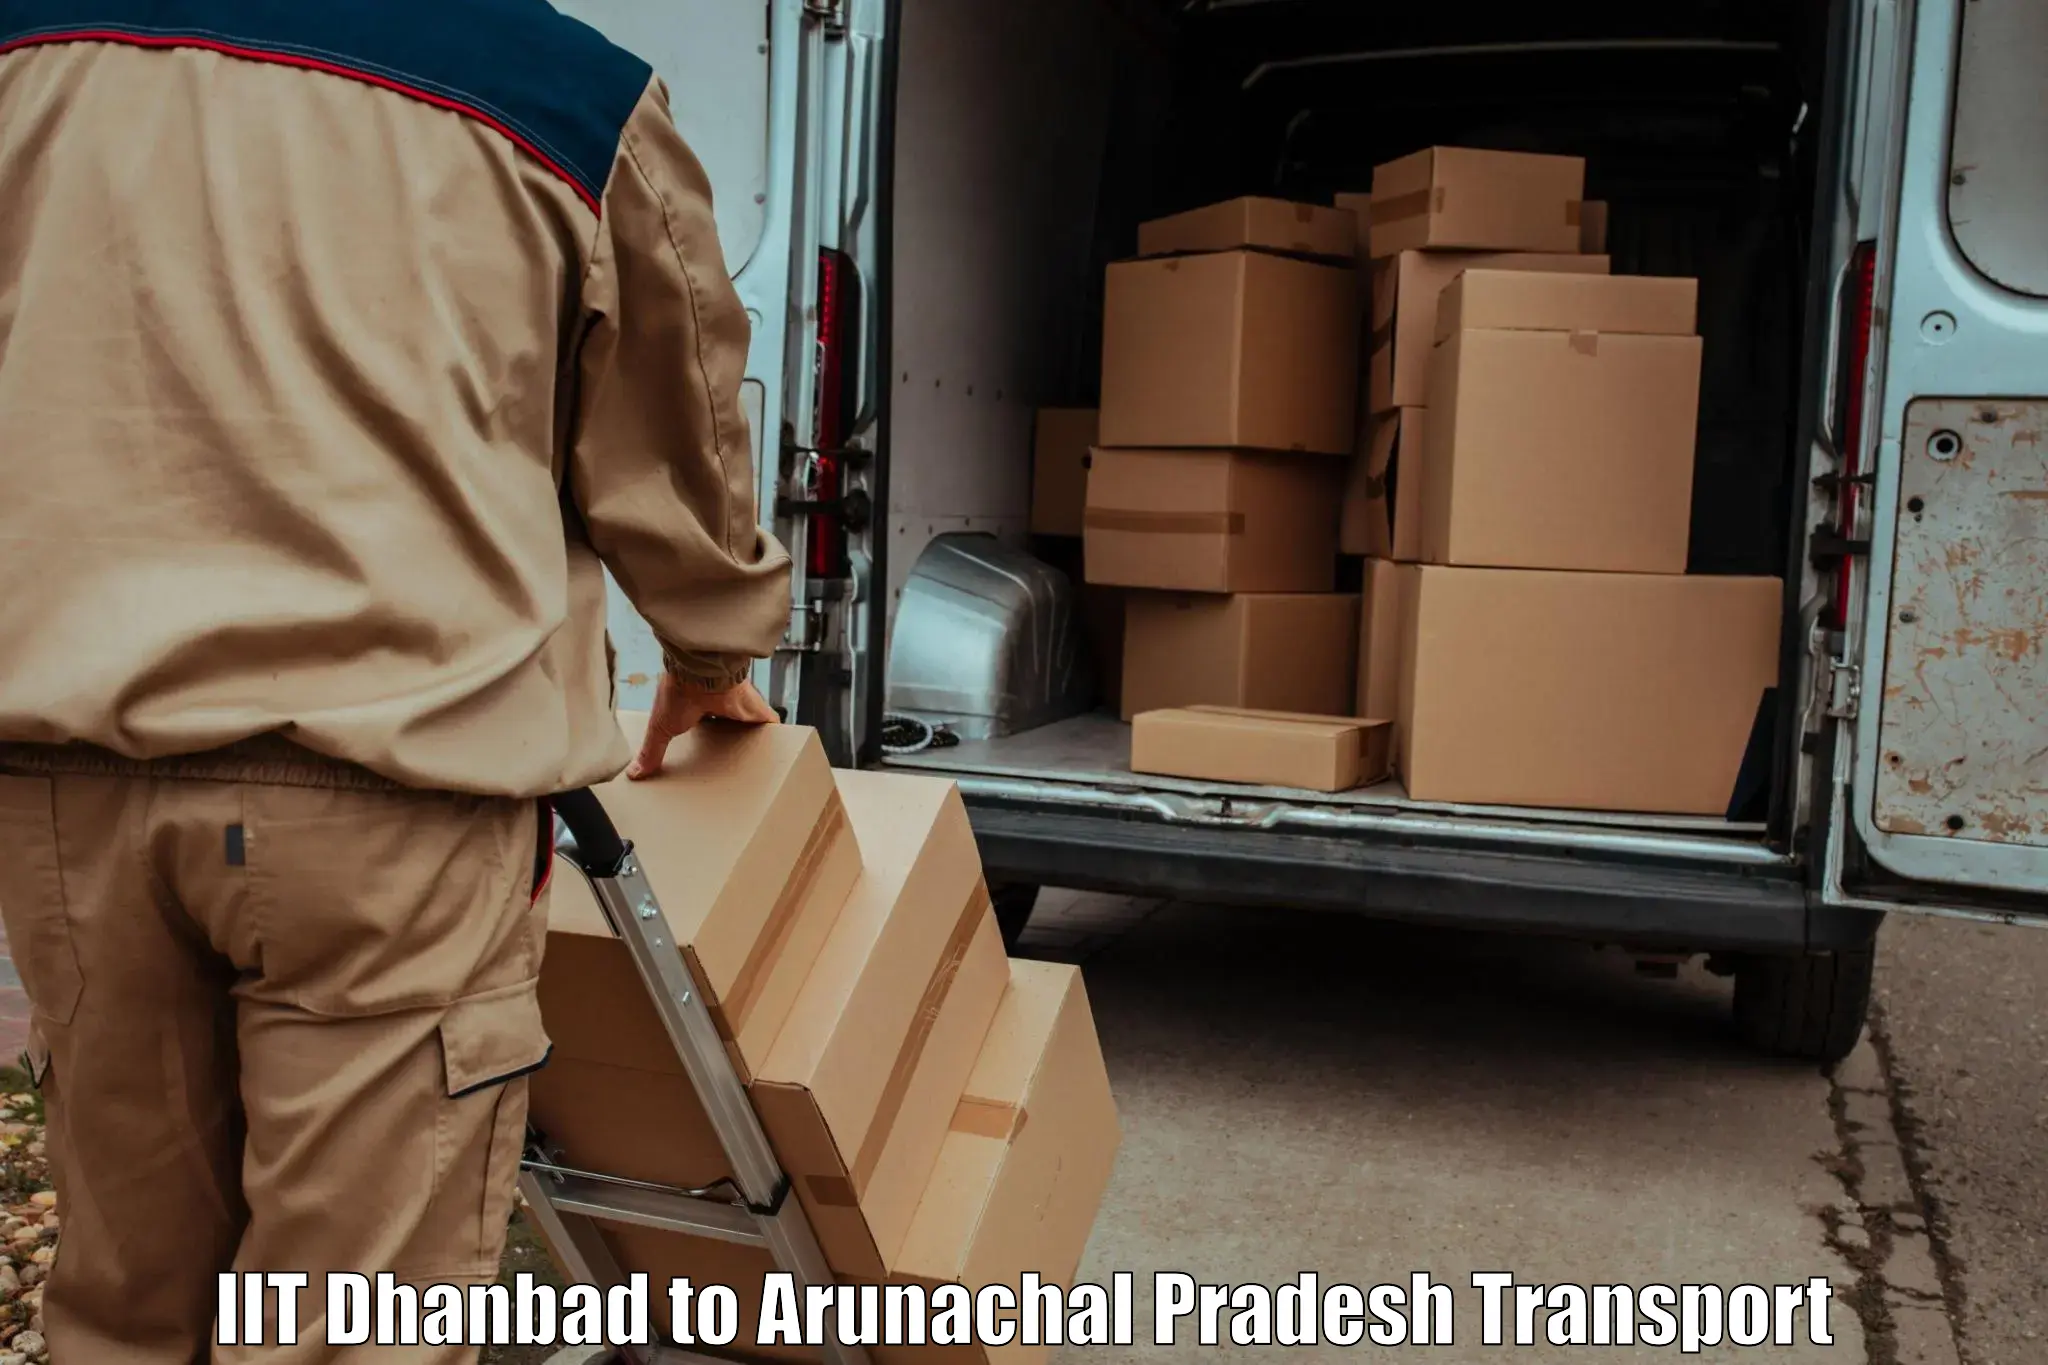 Online transport service IIT Dhanbad to Arunachal Pradesh